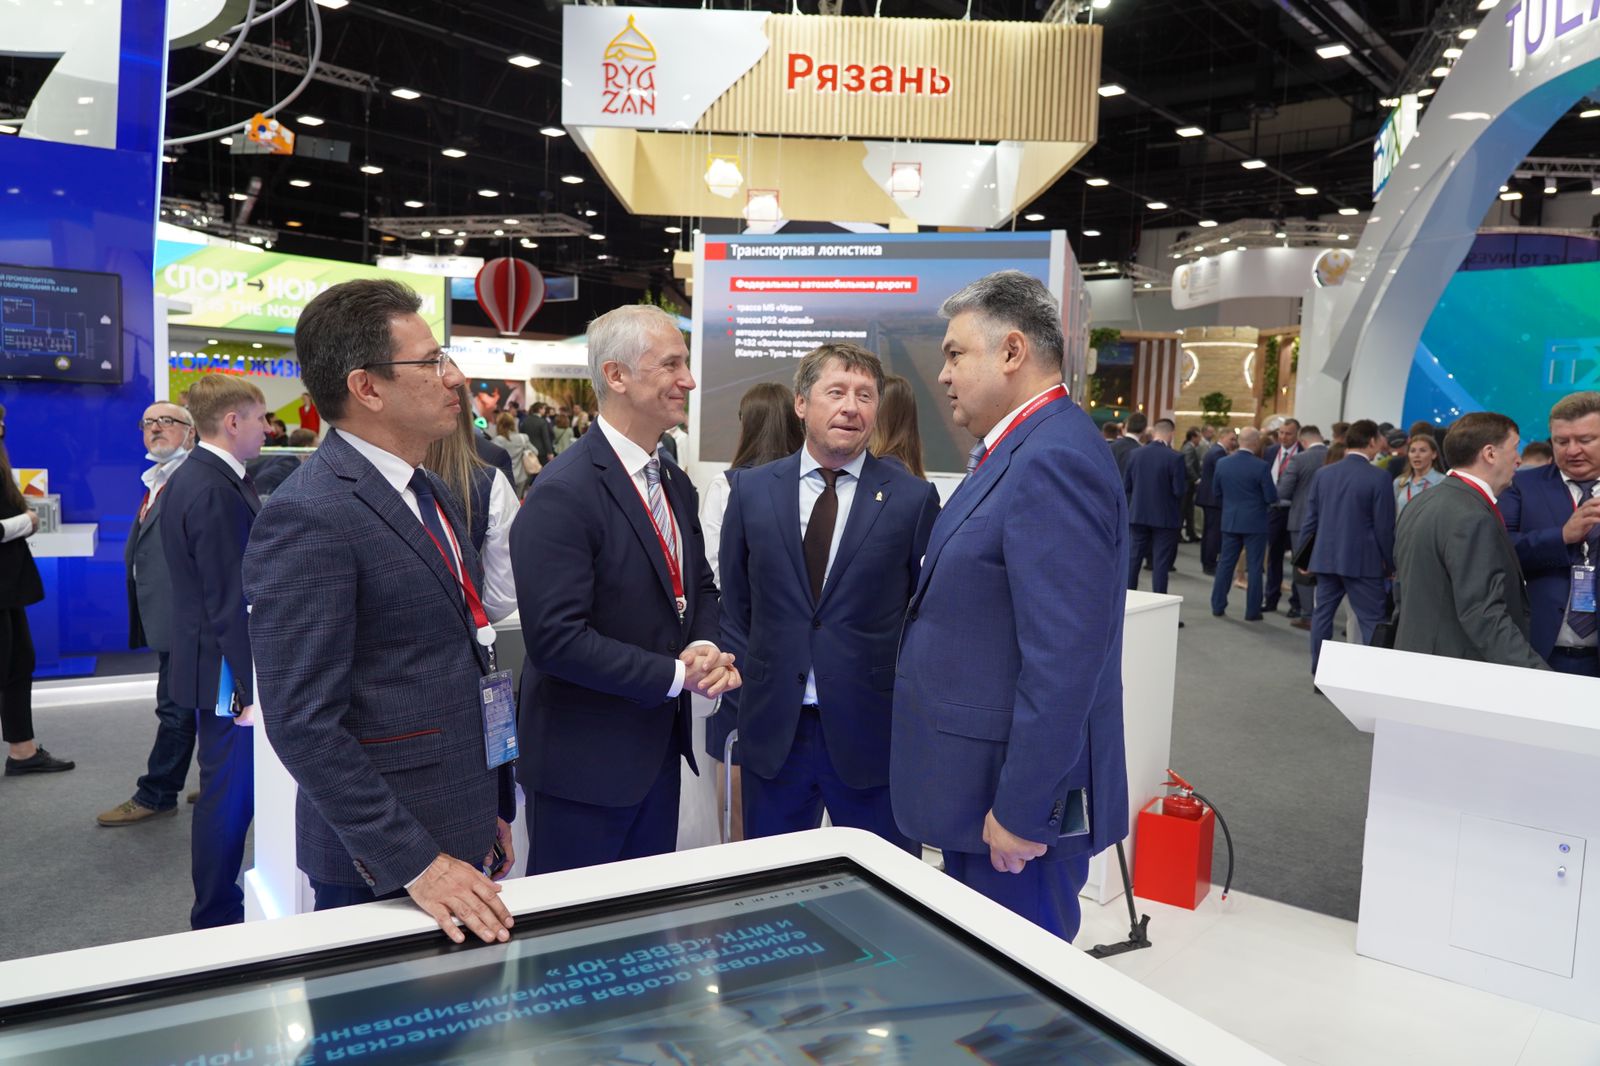 Казахстан активизирует сотрудничество с российскими регионами